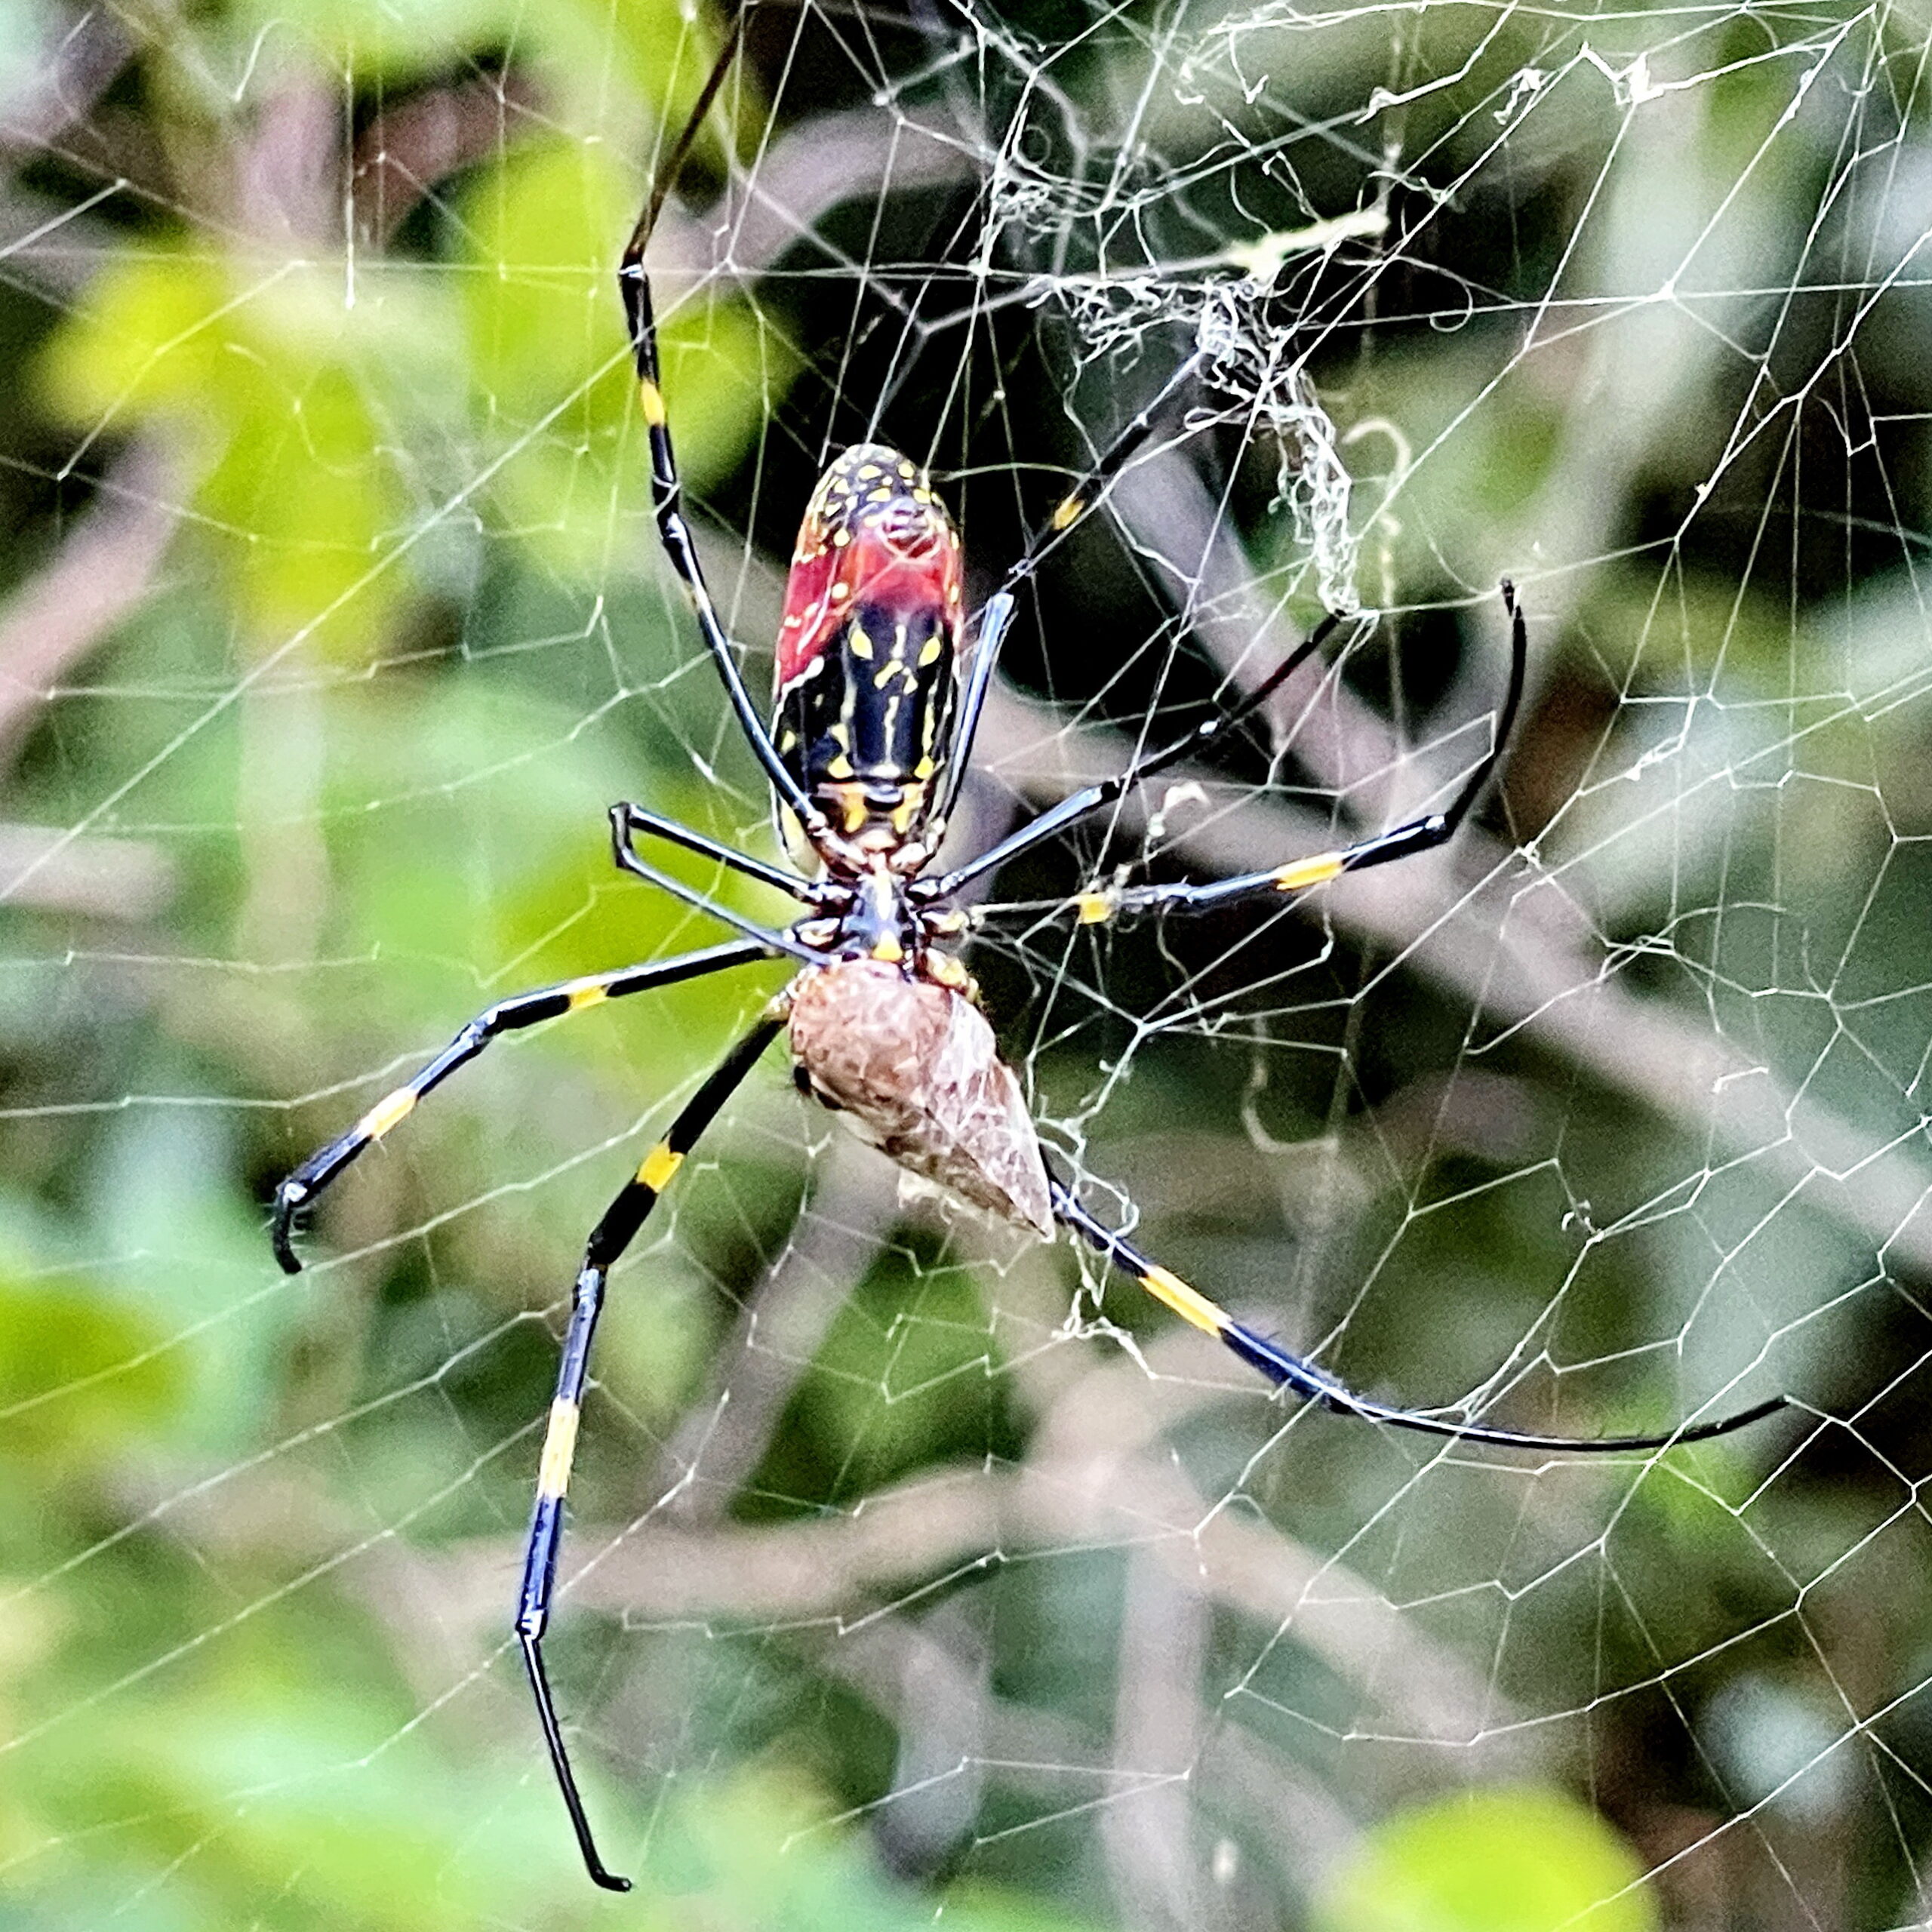 日本限定 ミキロコス 女郎蜘蛛 クモ 天敵 害虫 忌避 無農薬